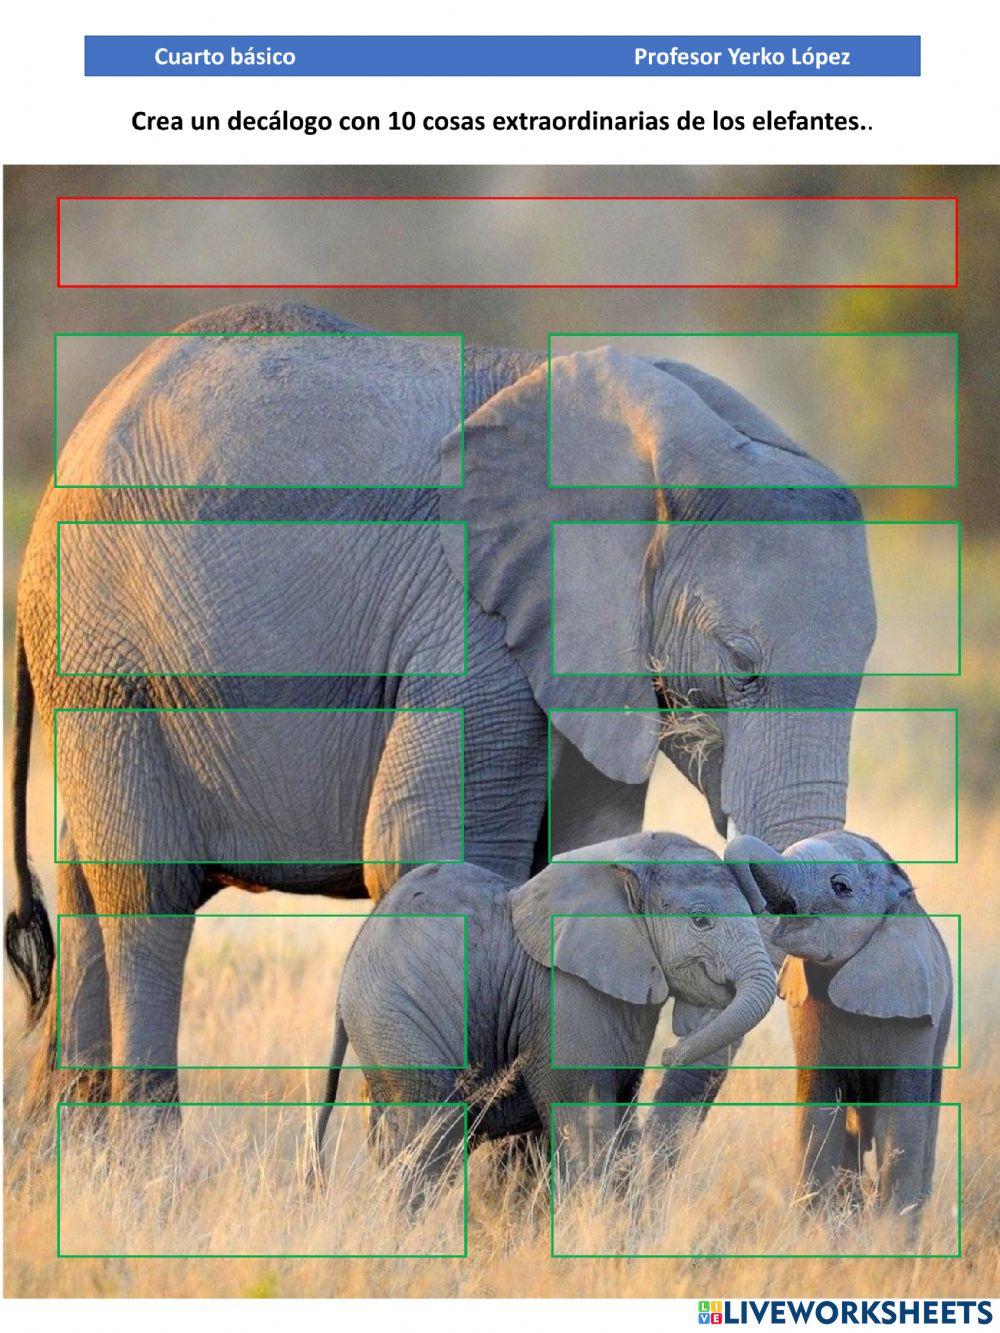 Decalogo elefante